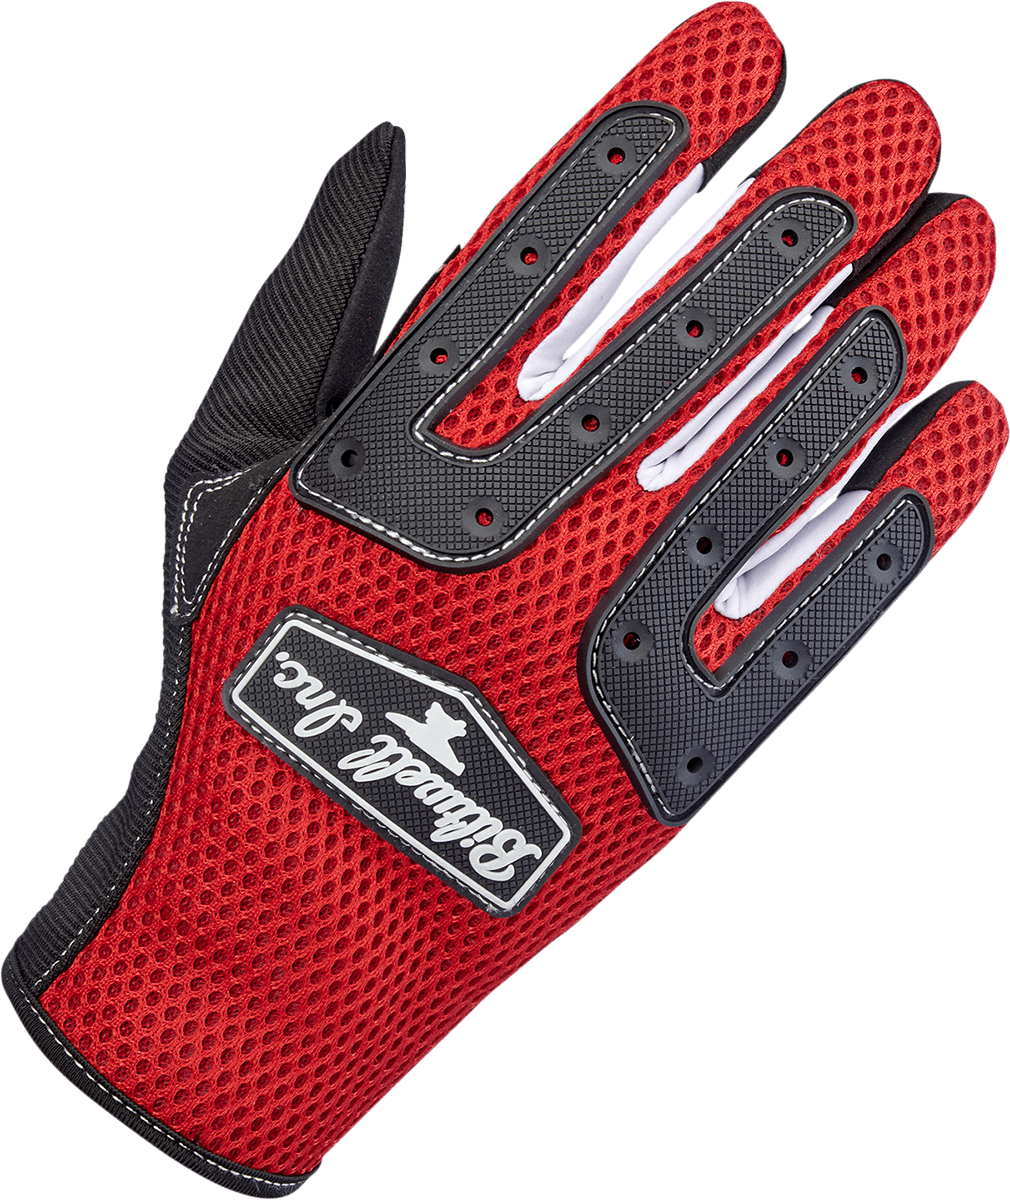 BILTWELL-Anza Gloves / Orange Black-Gloves-MetalCore Harley Supply